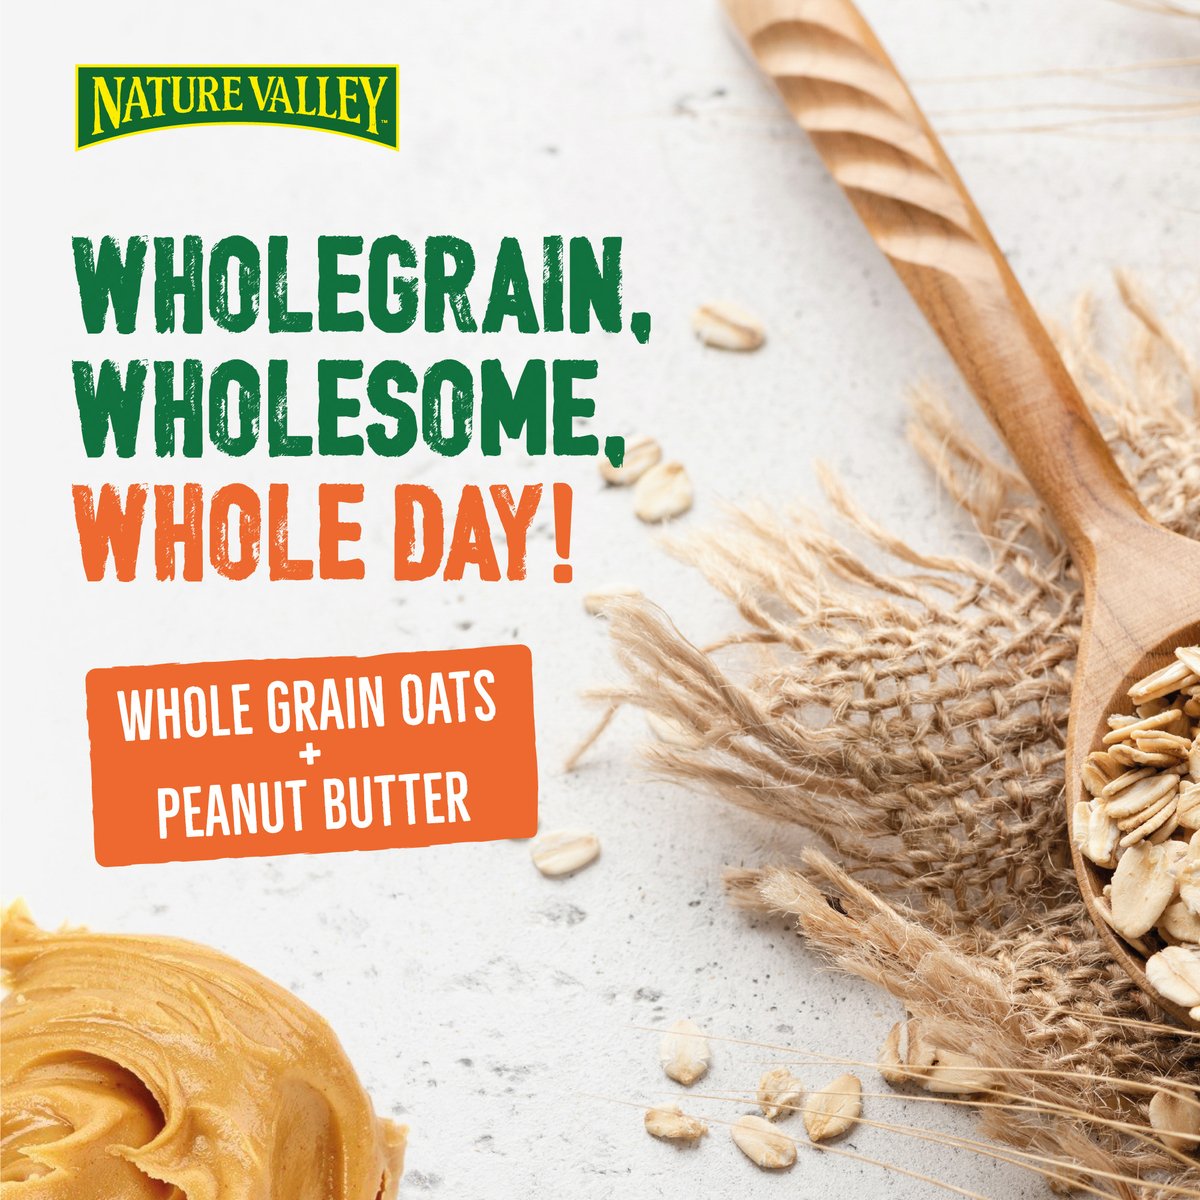 Nature Valley Crunchy Oats & Peanut Butter Bar 42 g